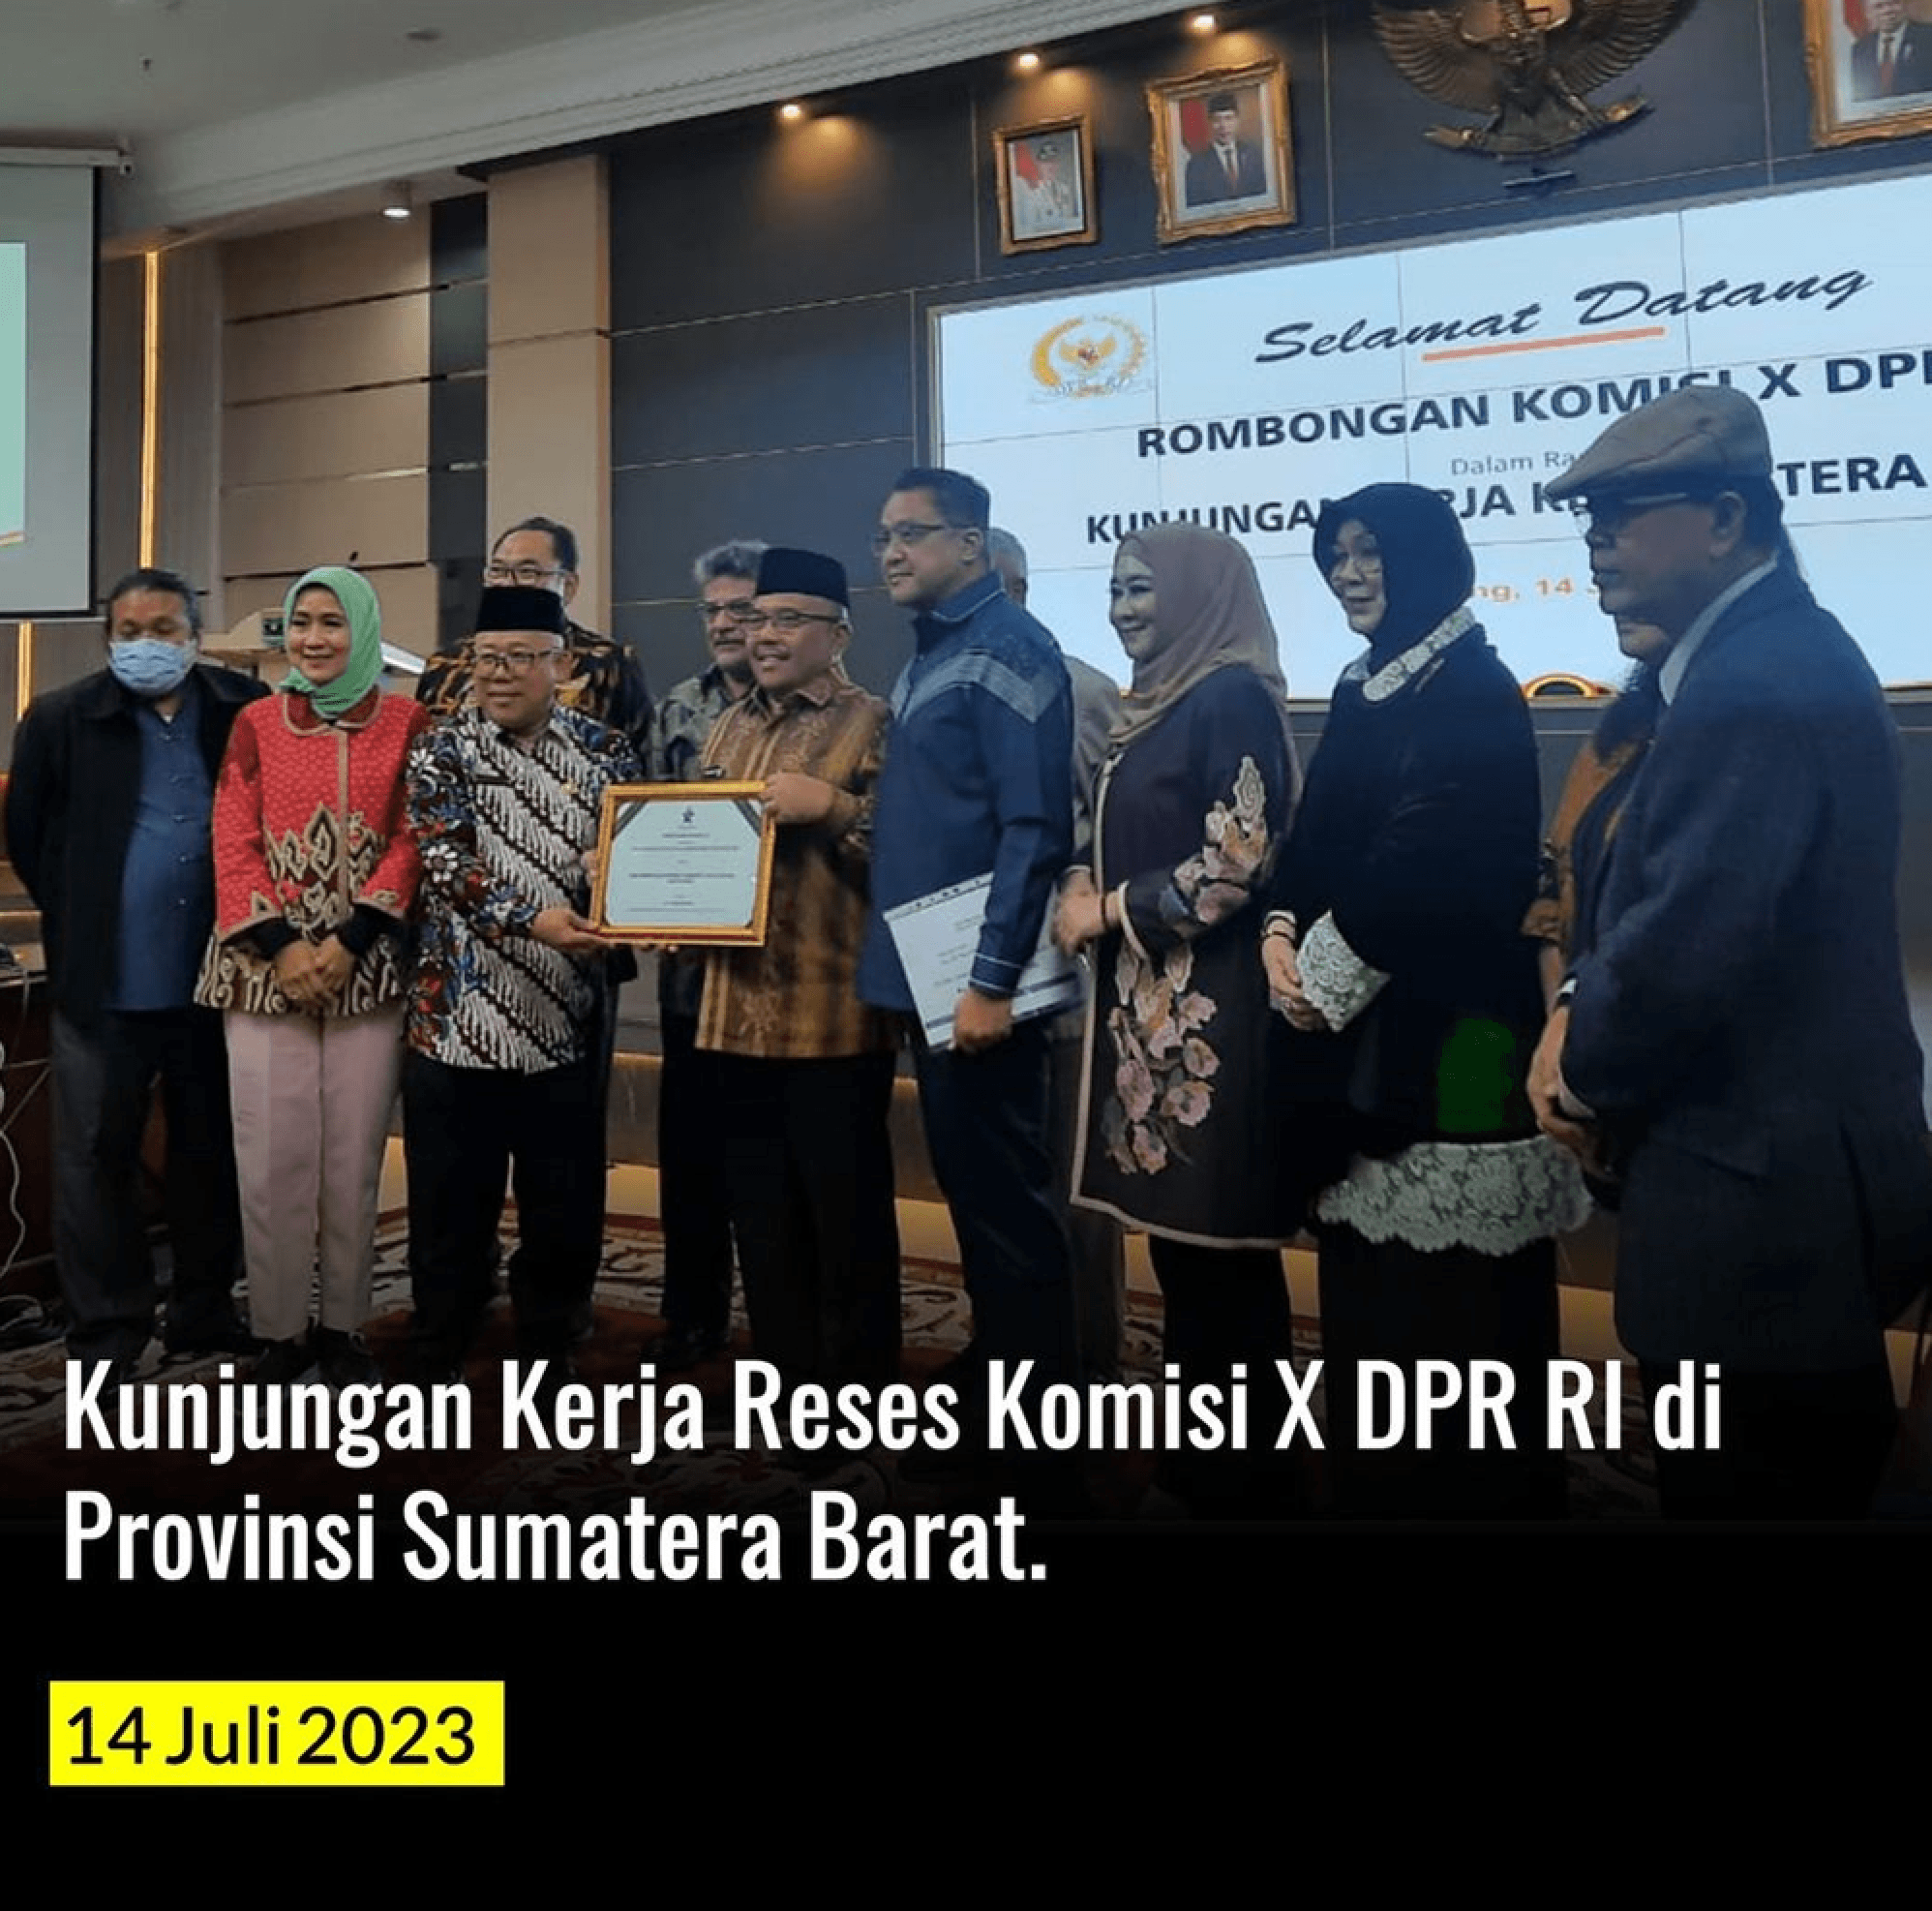 Kunjungan Kerja Reses Komisi X DPR RI Bersama Perpusnas RI di Provinsi Sumatra Barat